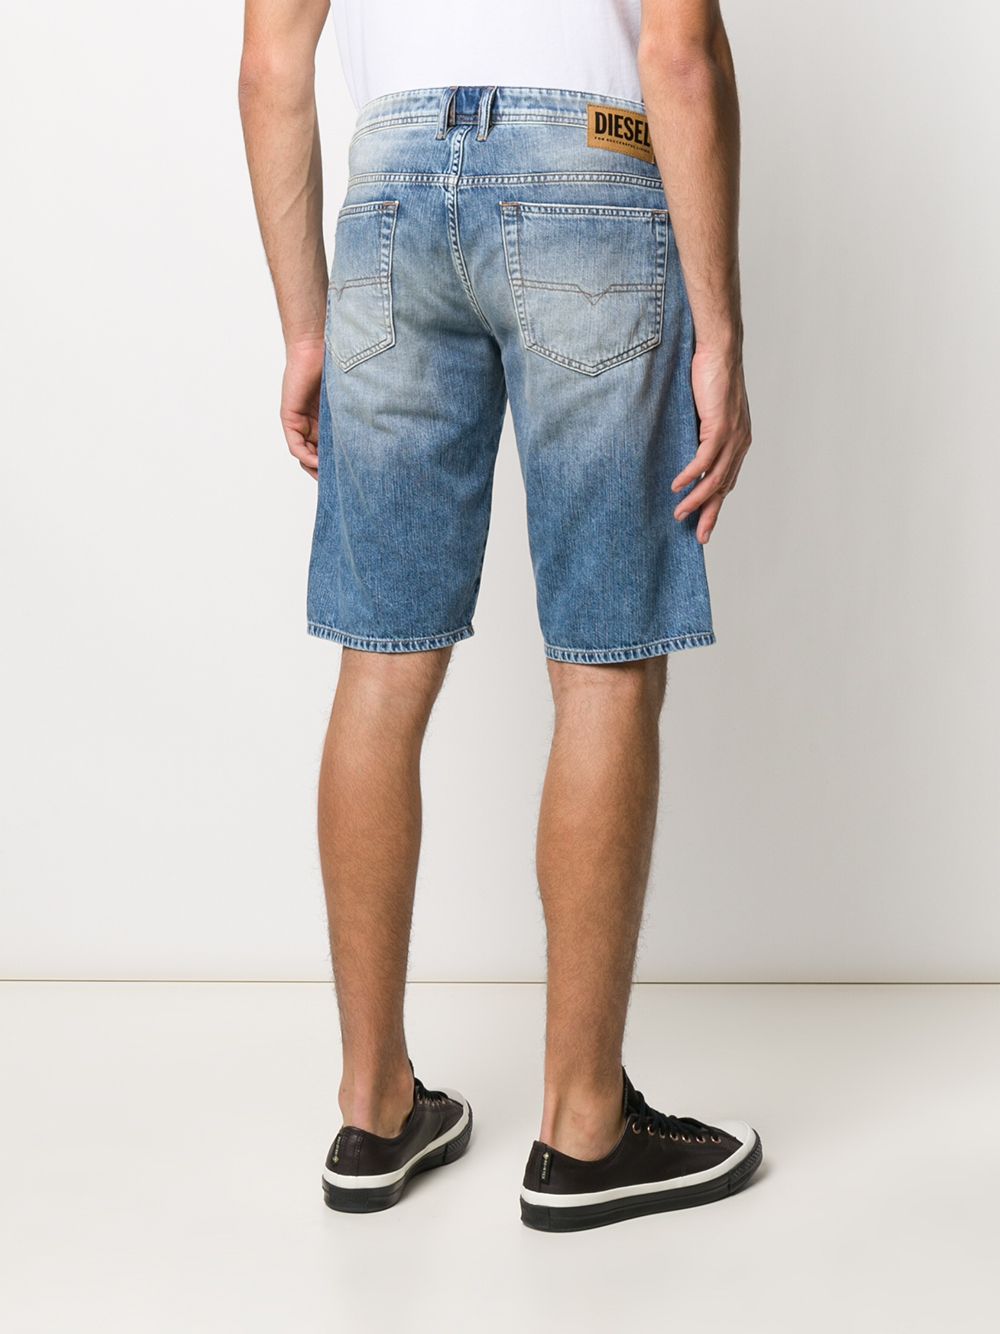 фото Diesel джинсовые шорты с эффектом потертости